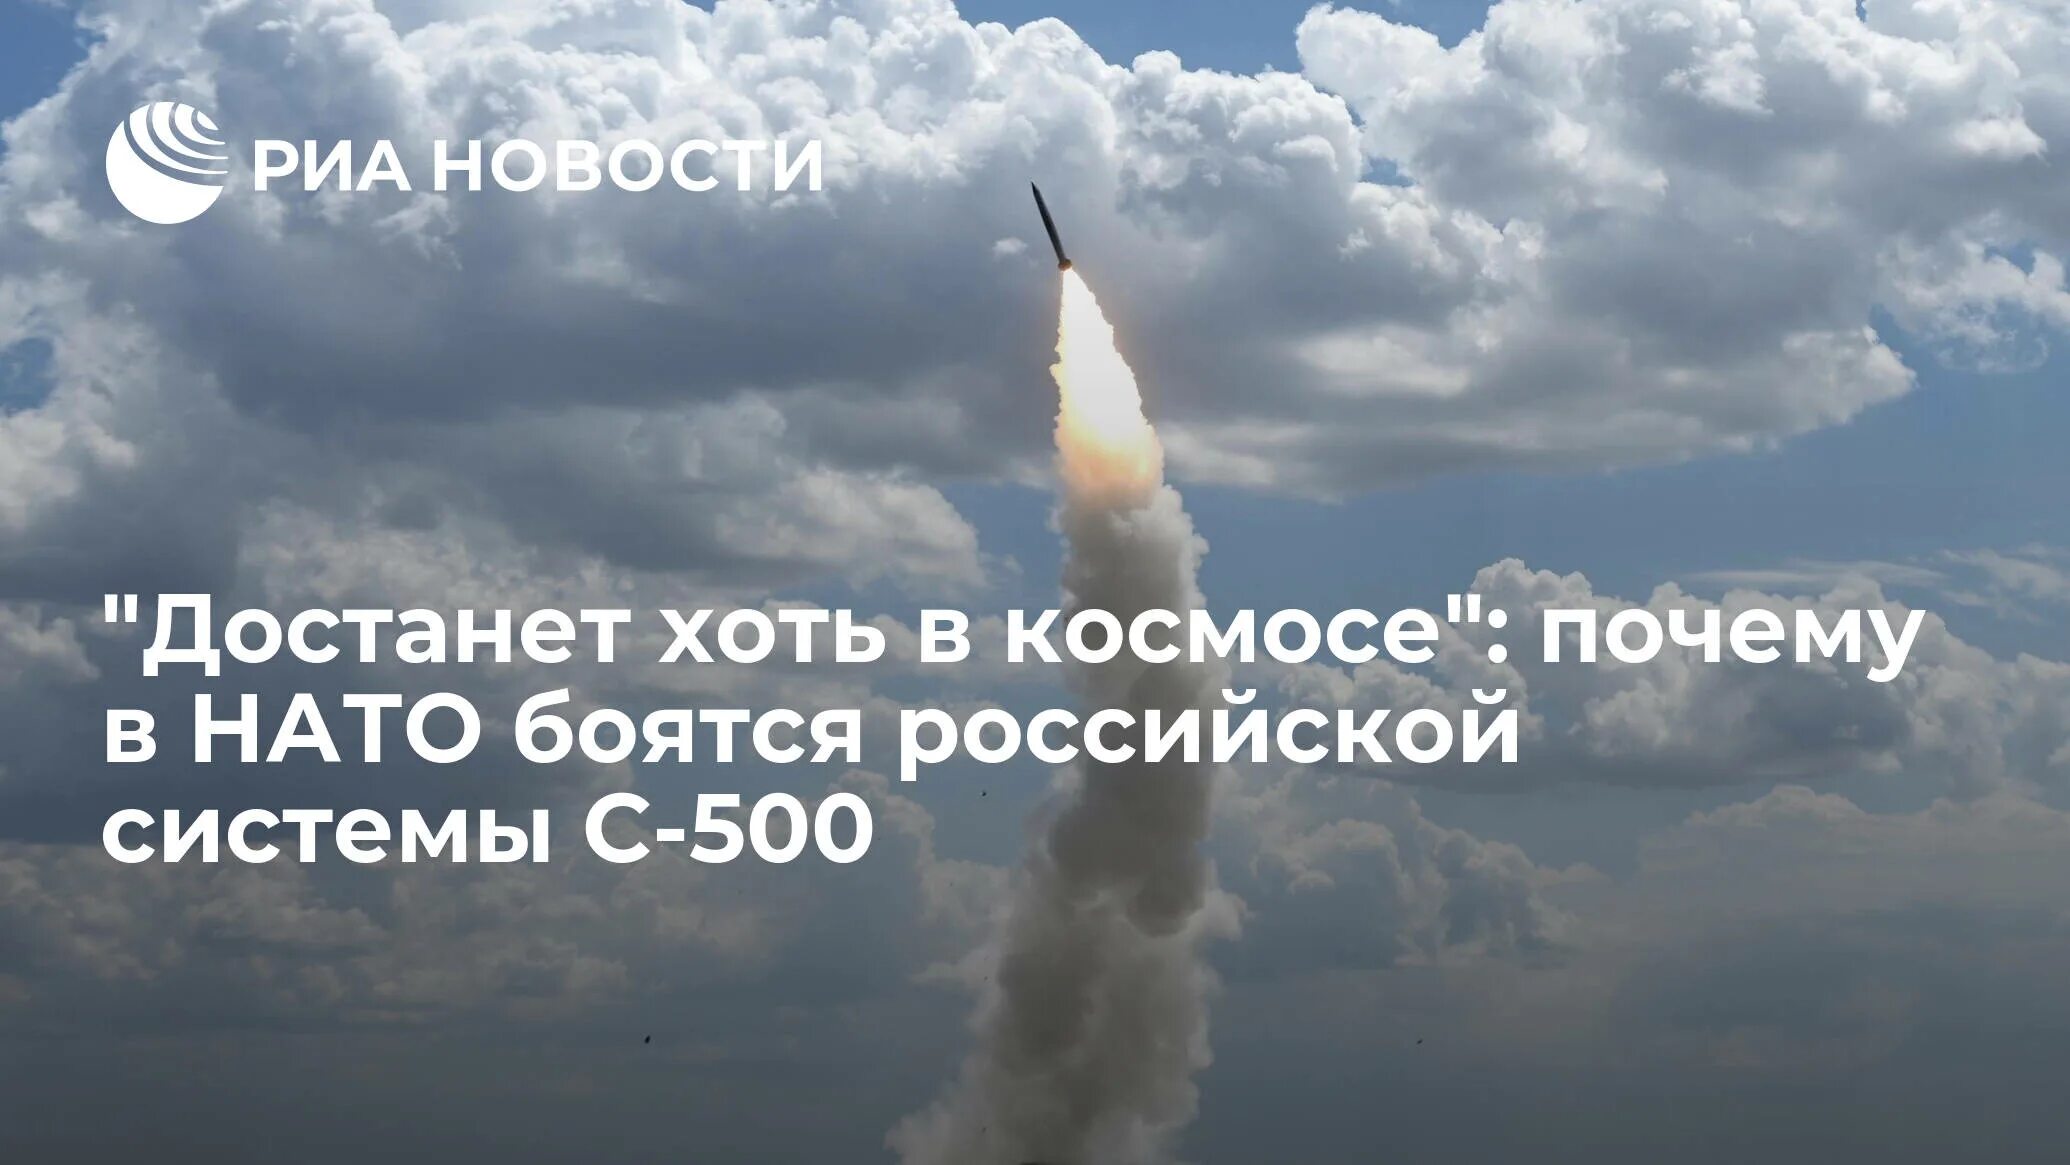 Предупреждение граждан Украины о ракетном ударе со стороны РФ. Почему бояться нато